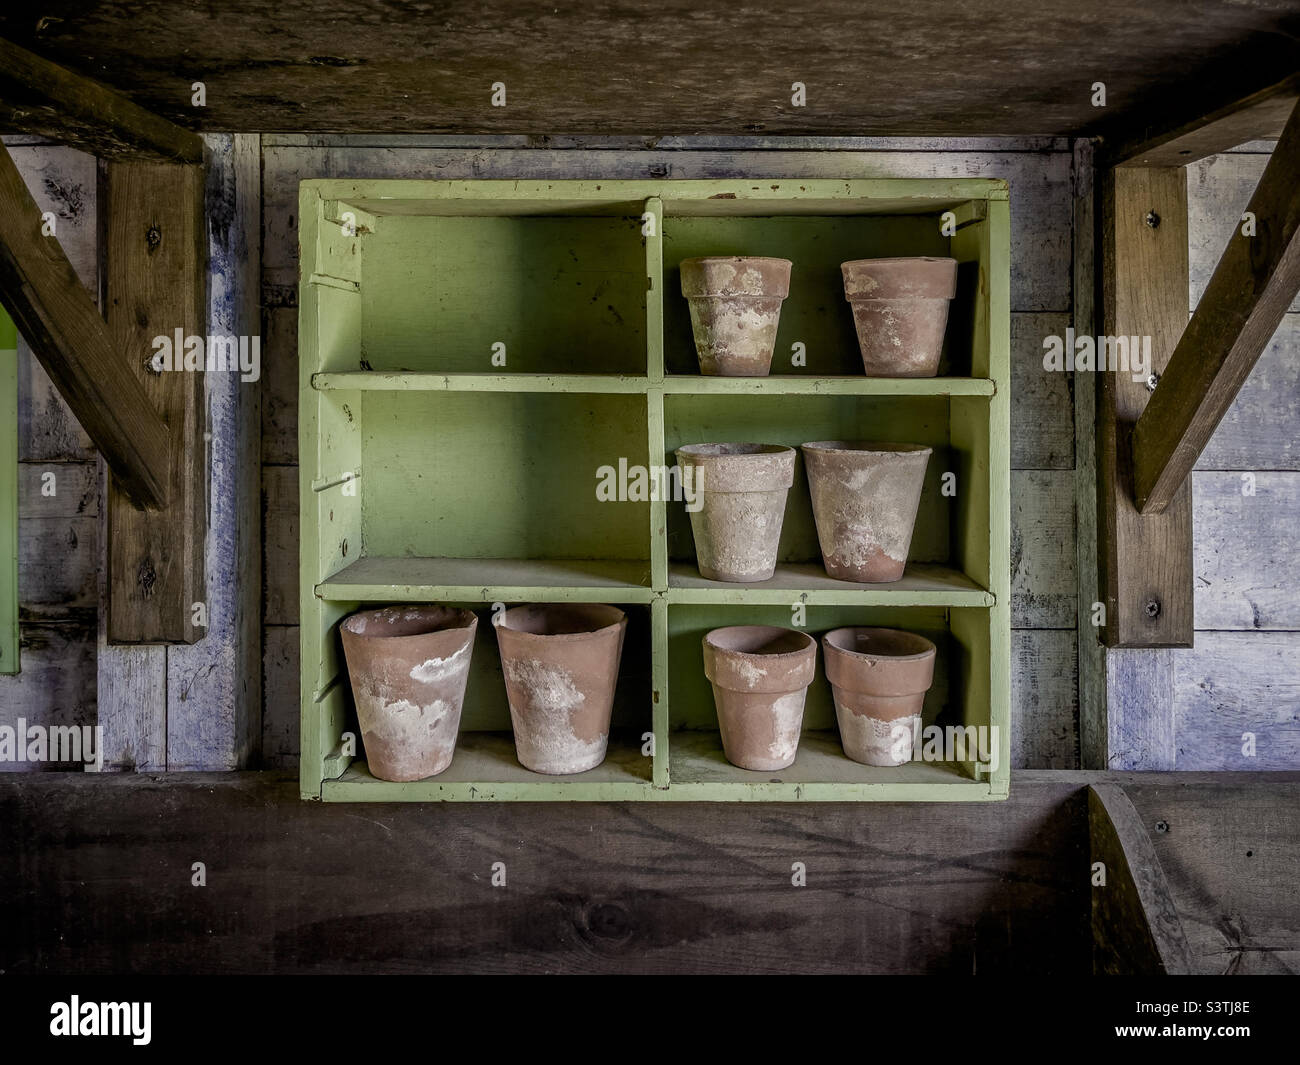 Etagères en bois dans un hangar de pot avec de petits pots de terre cuite Banque D'Images